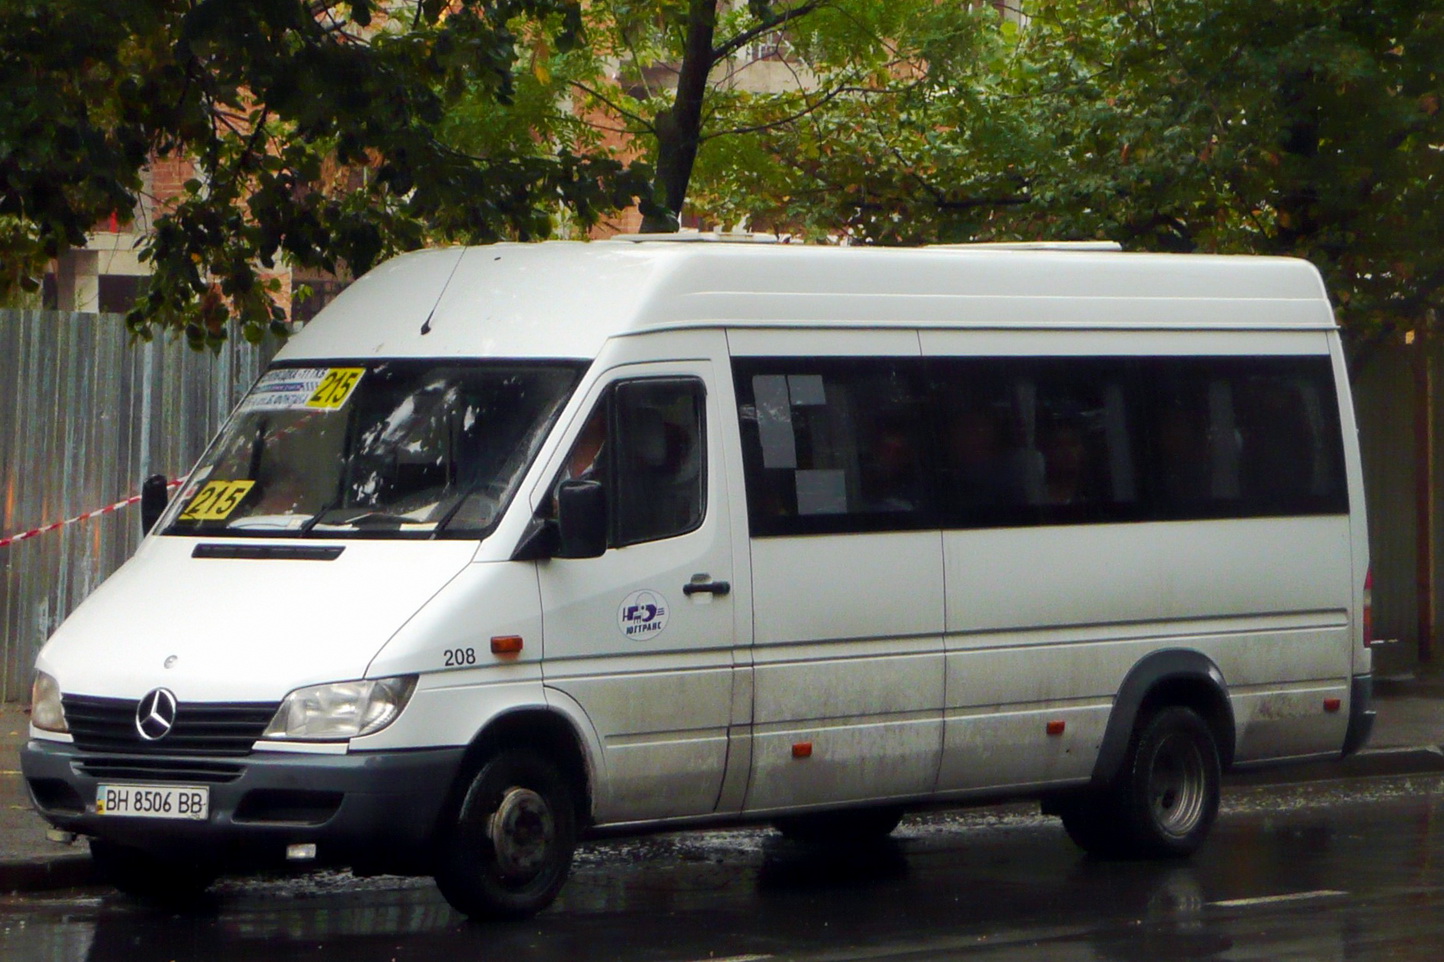 Одесская область, Mercedes-Benz Sprinter W904 416CDI № 775